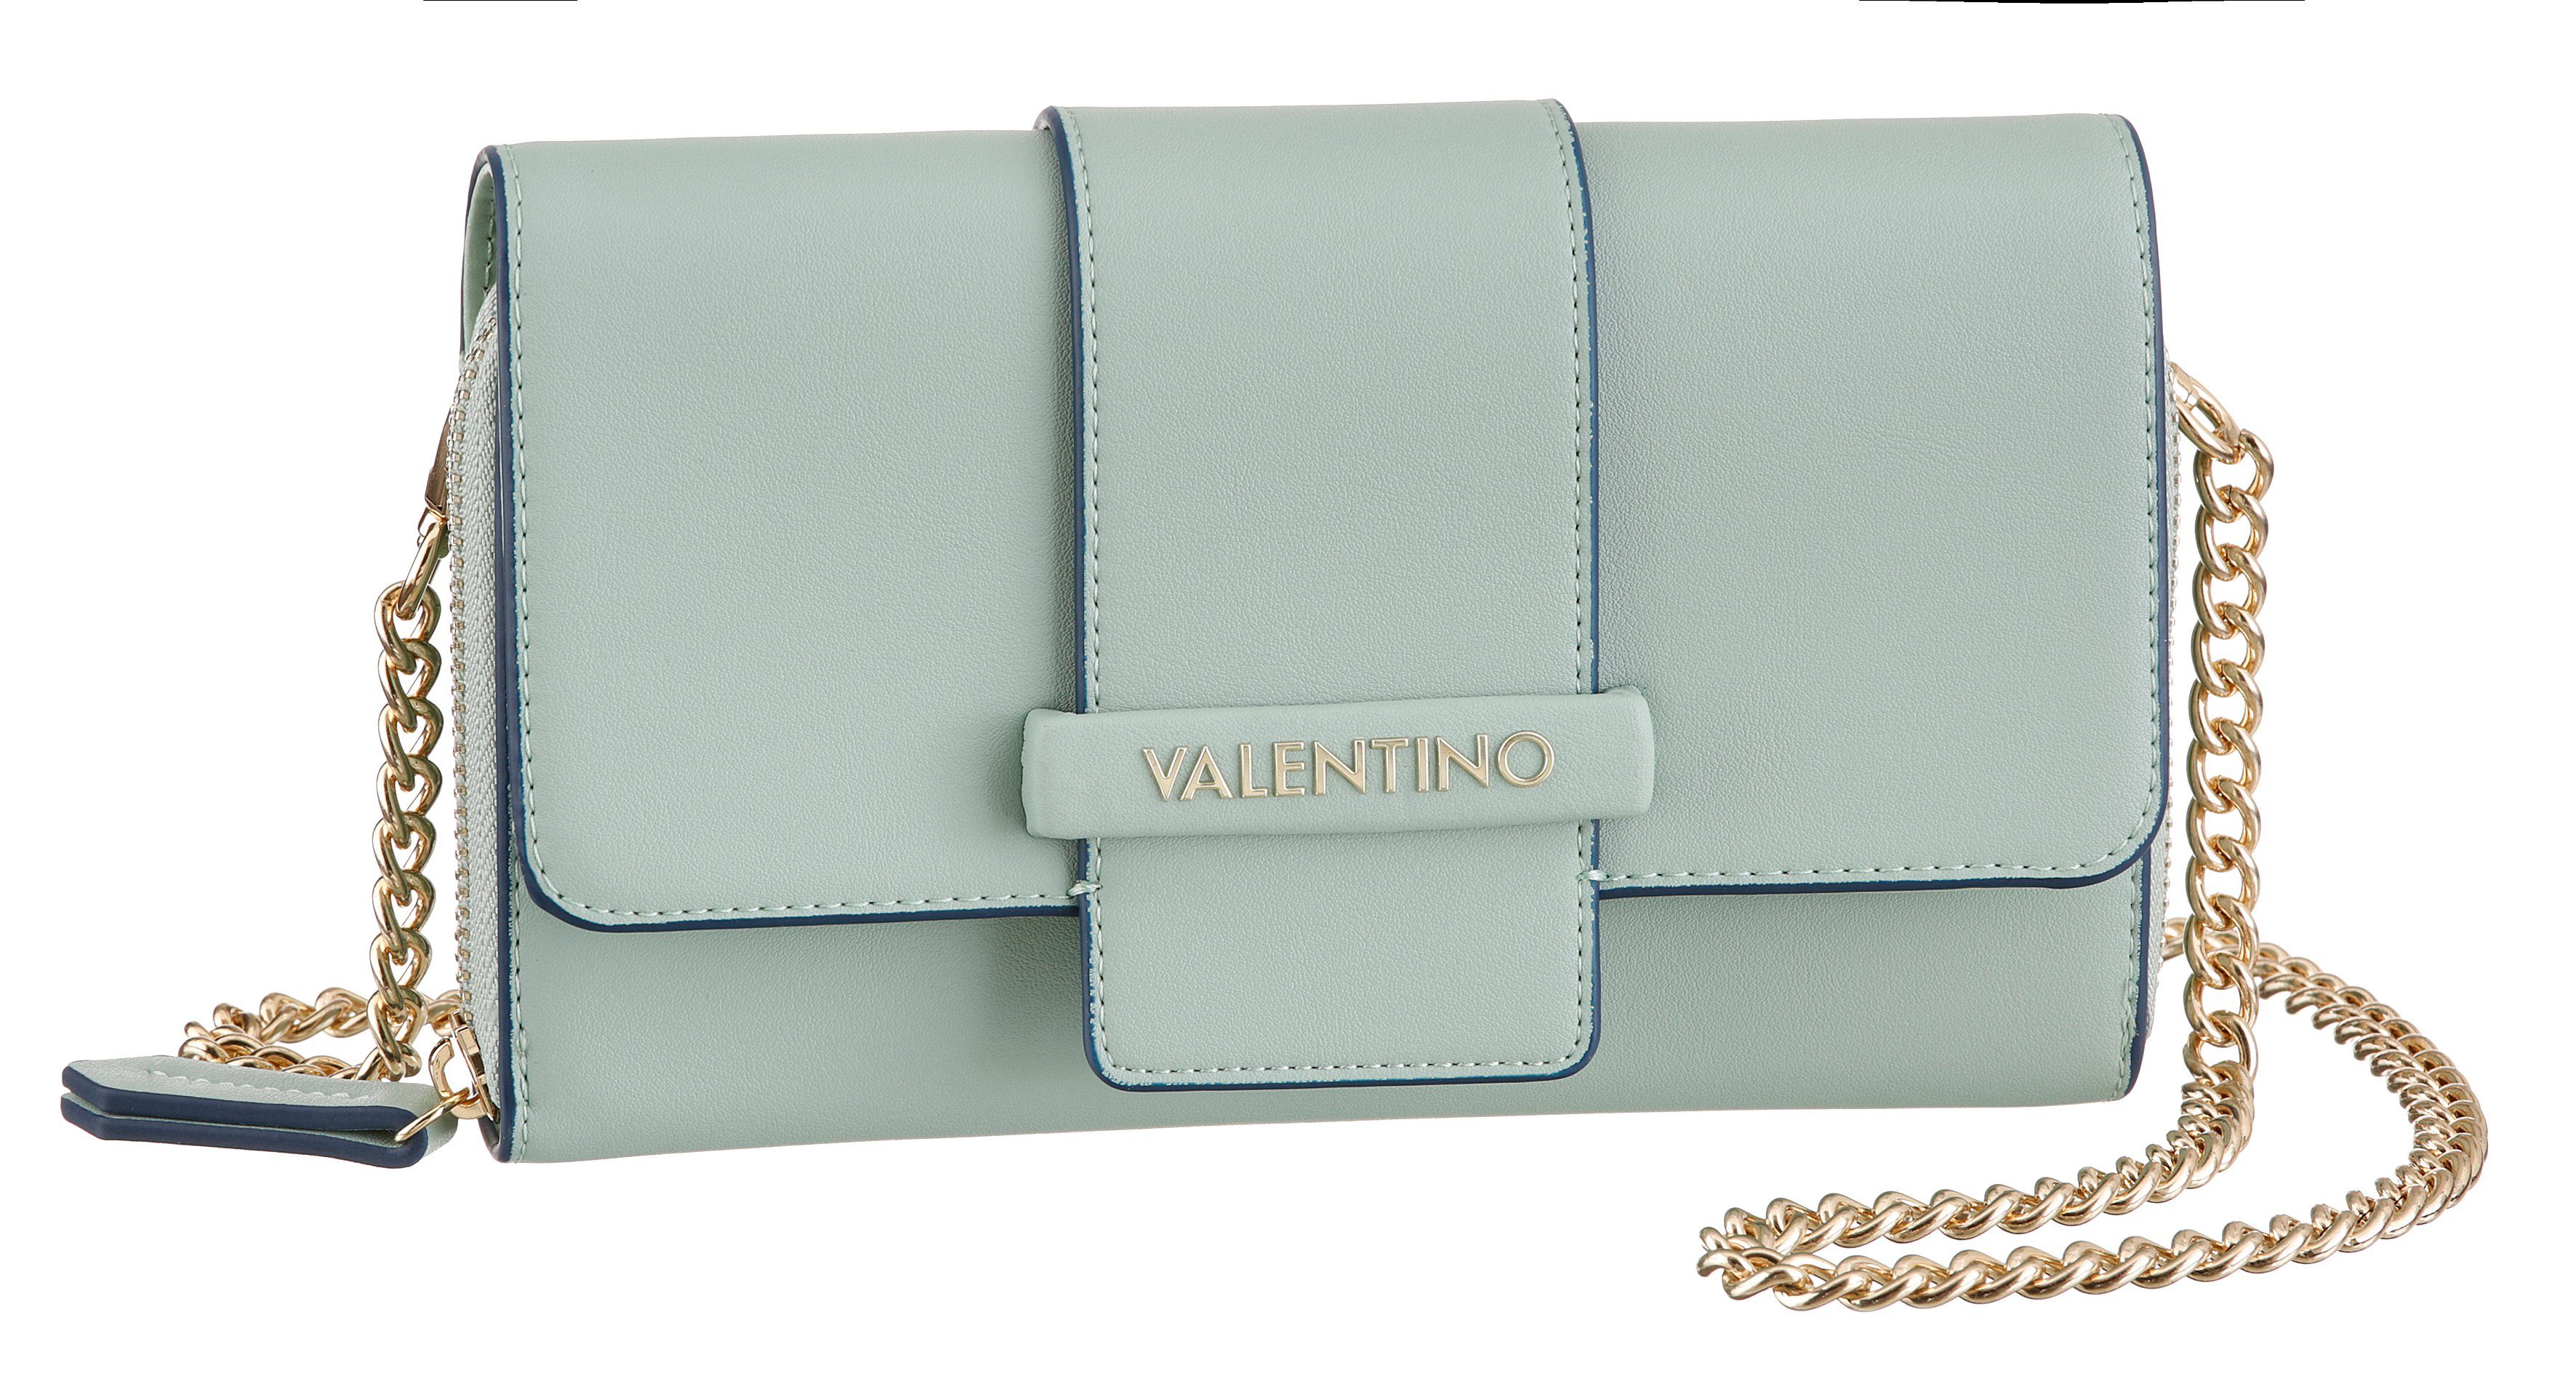 VALENTINO BAGS Mini Bag, mit abnehmbarer Umhängekette online kaufen | OTTO